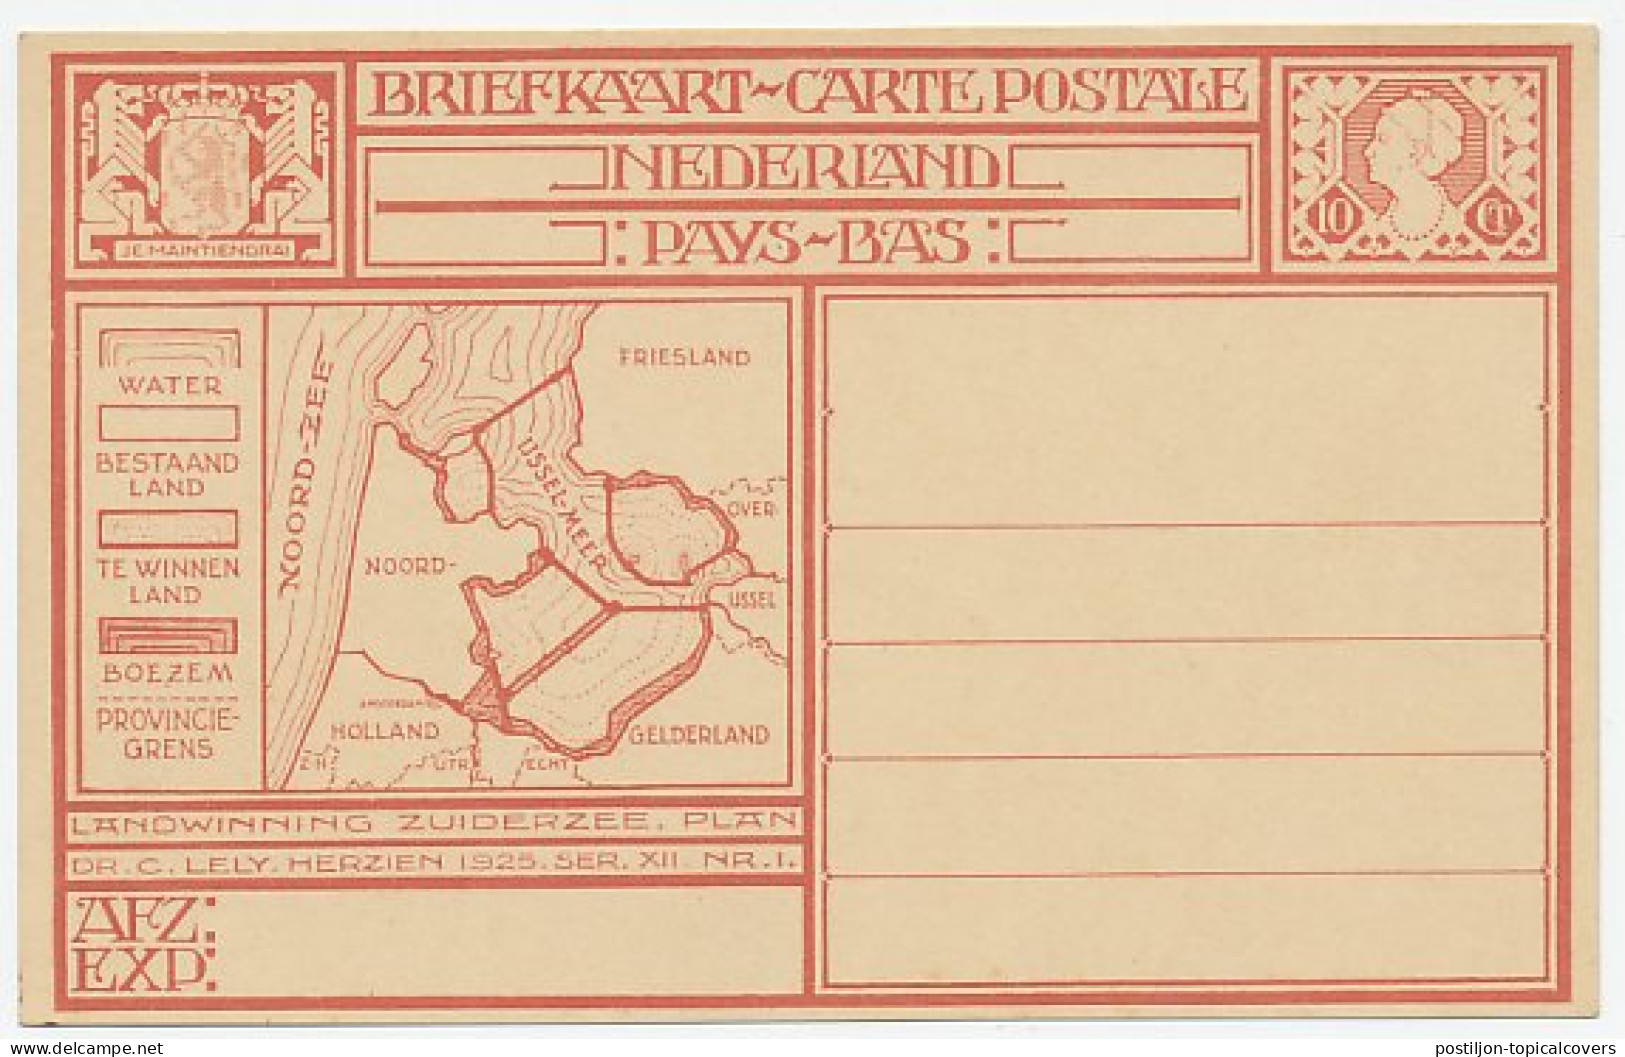 Briefkaart G. 213 B - Entiers Postaux